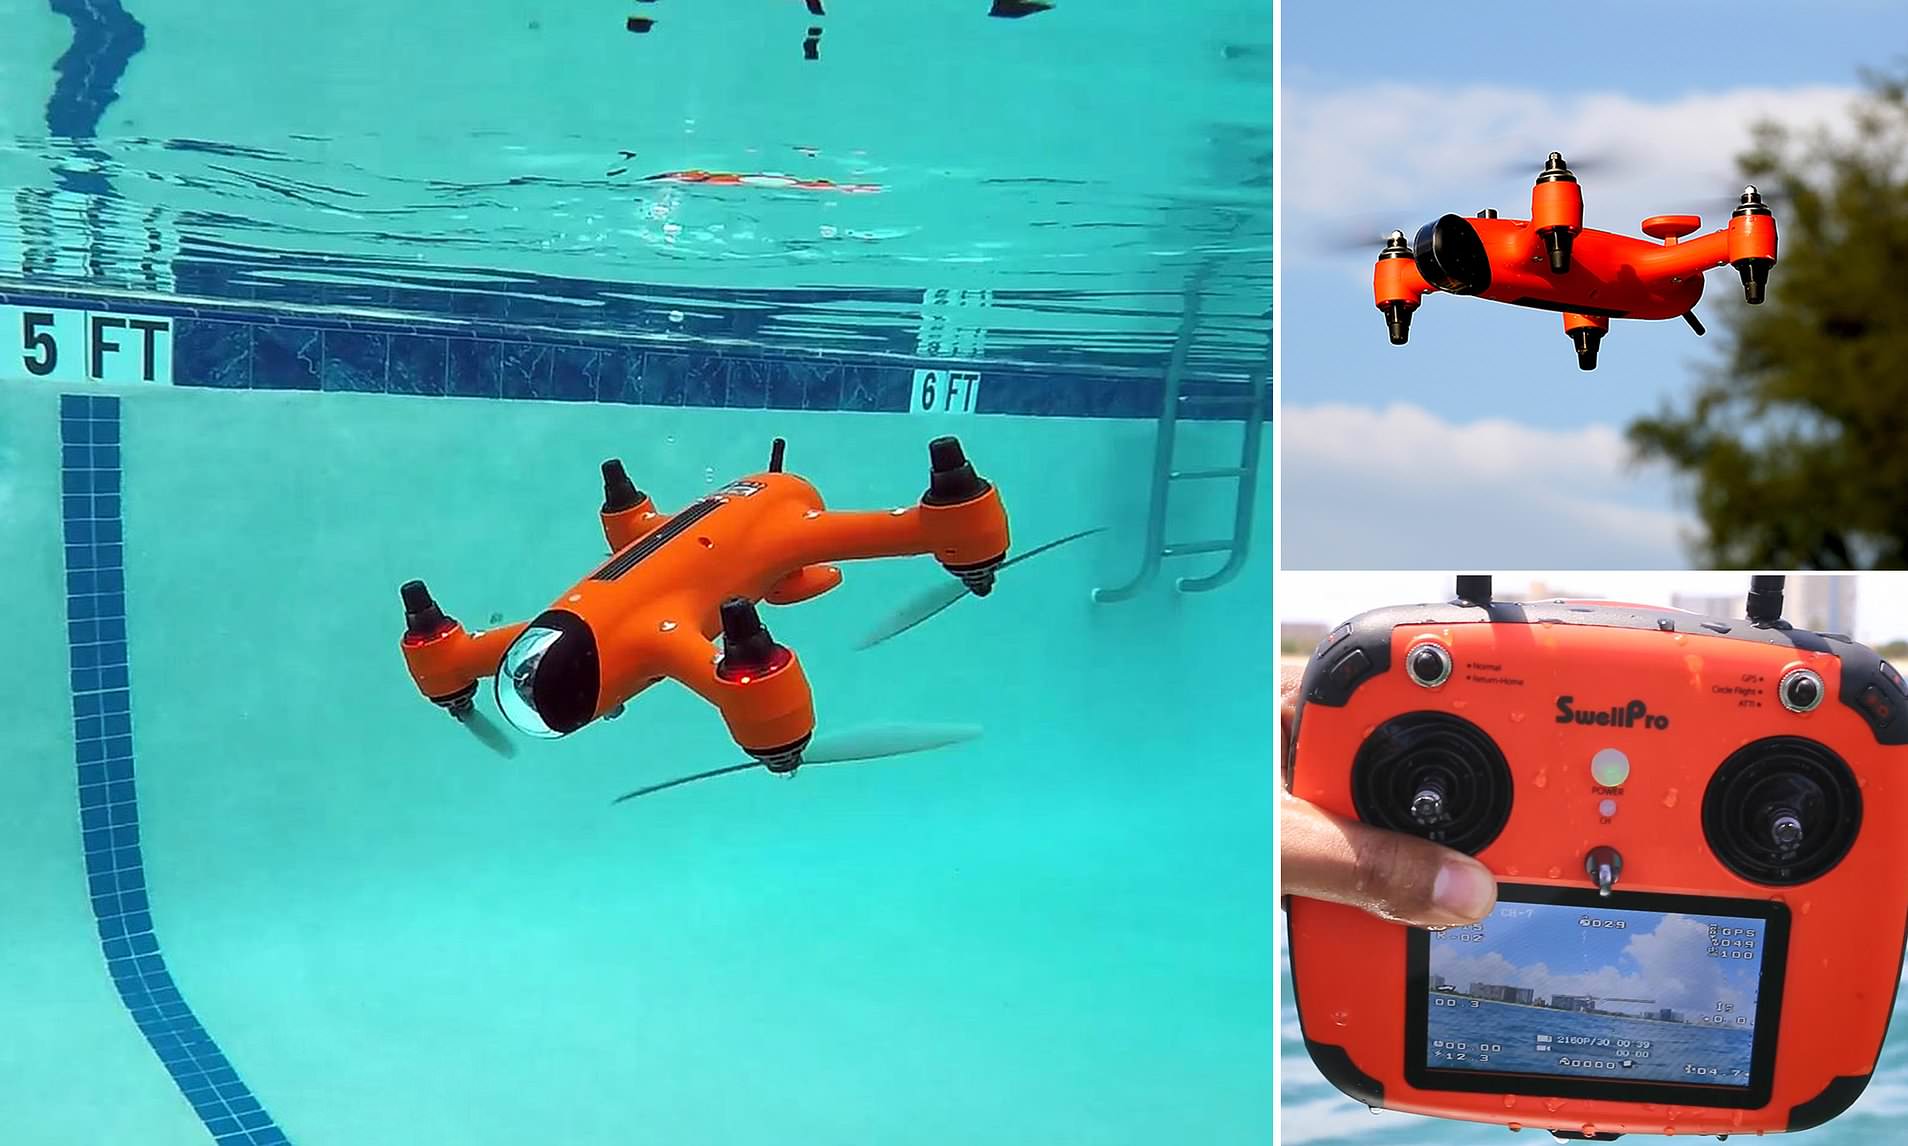 Waterproof Underwater Top Drones 2019 Fishing & Sailing